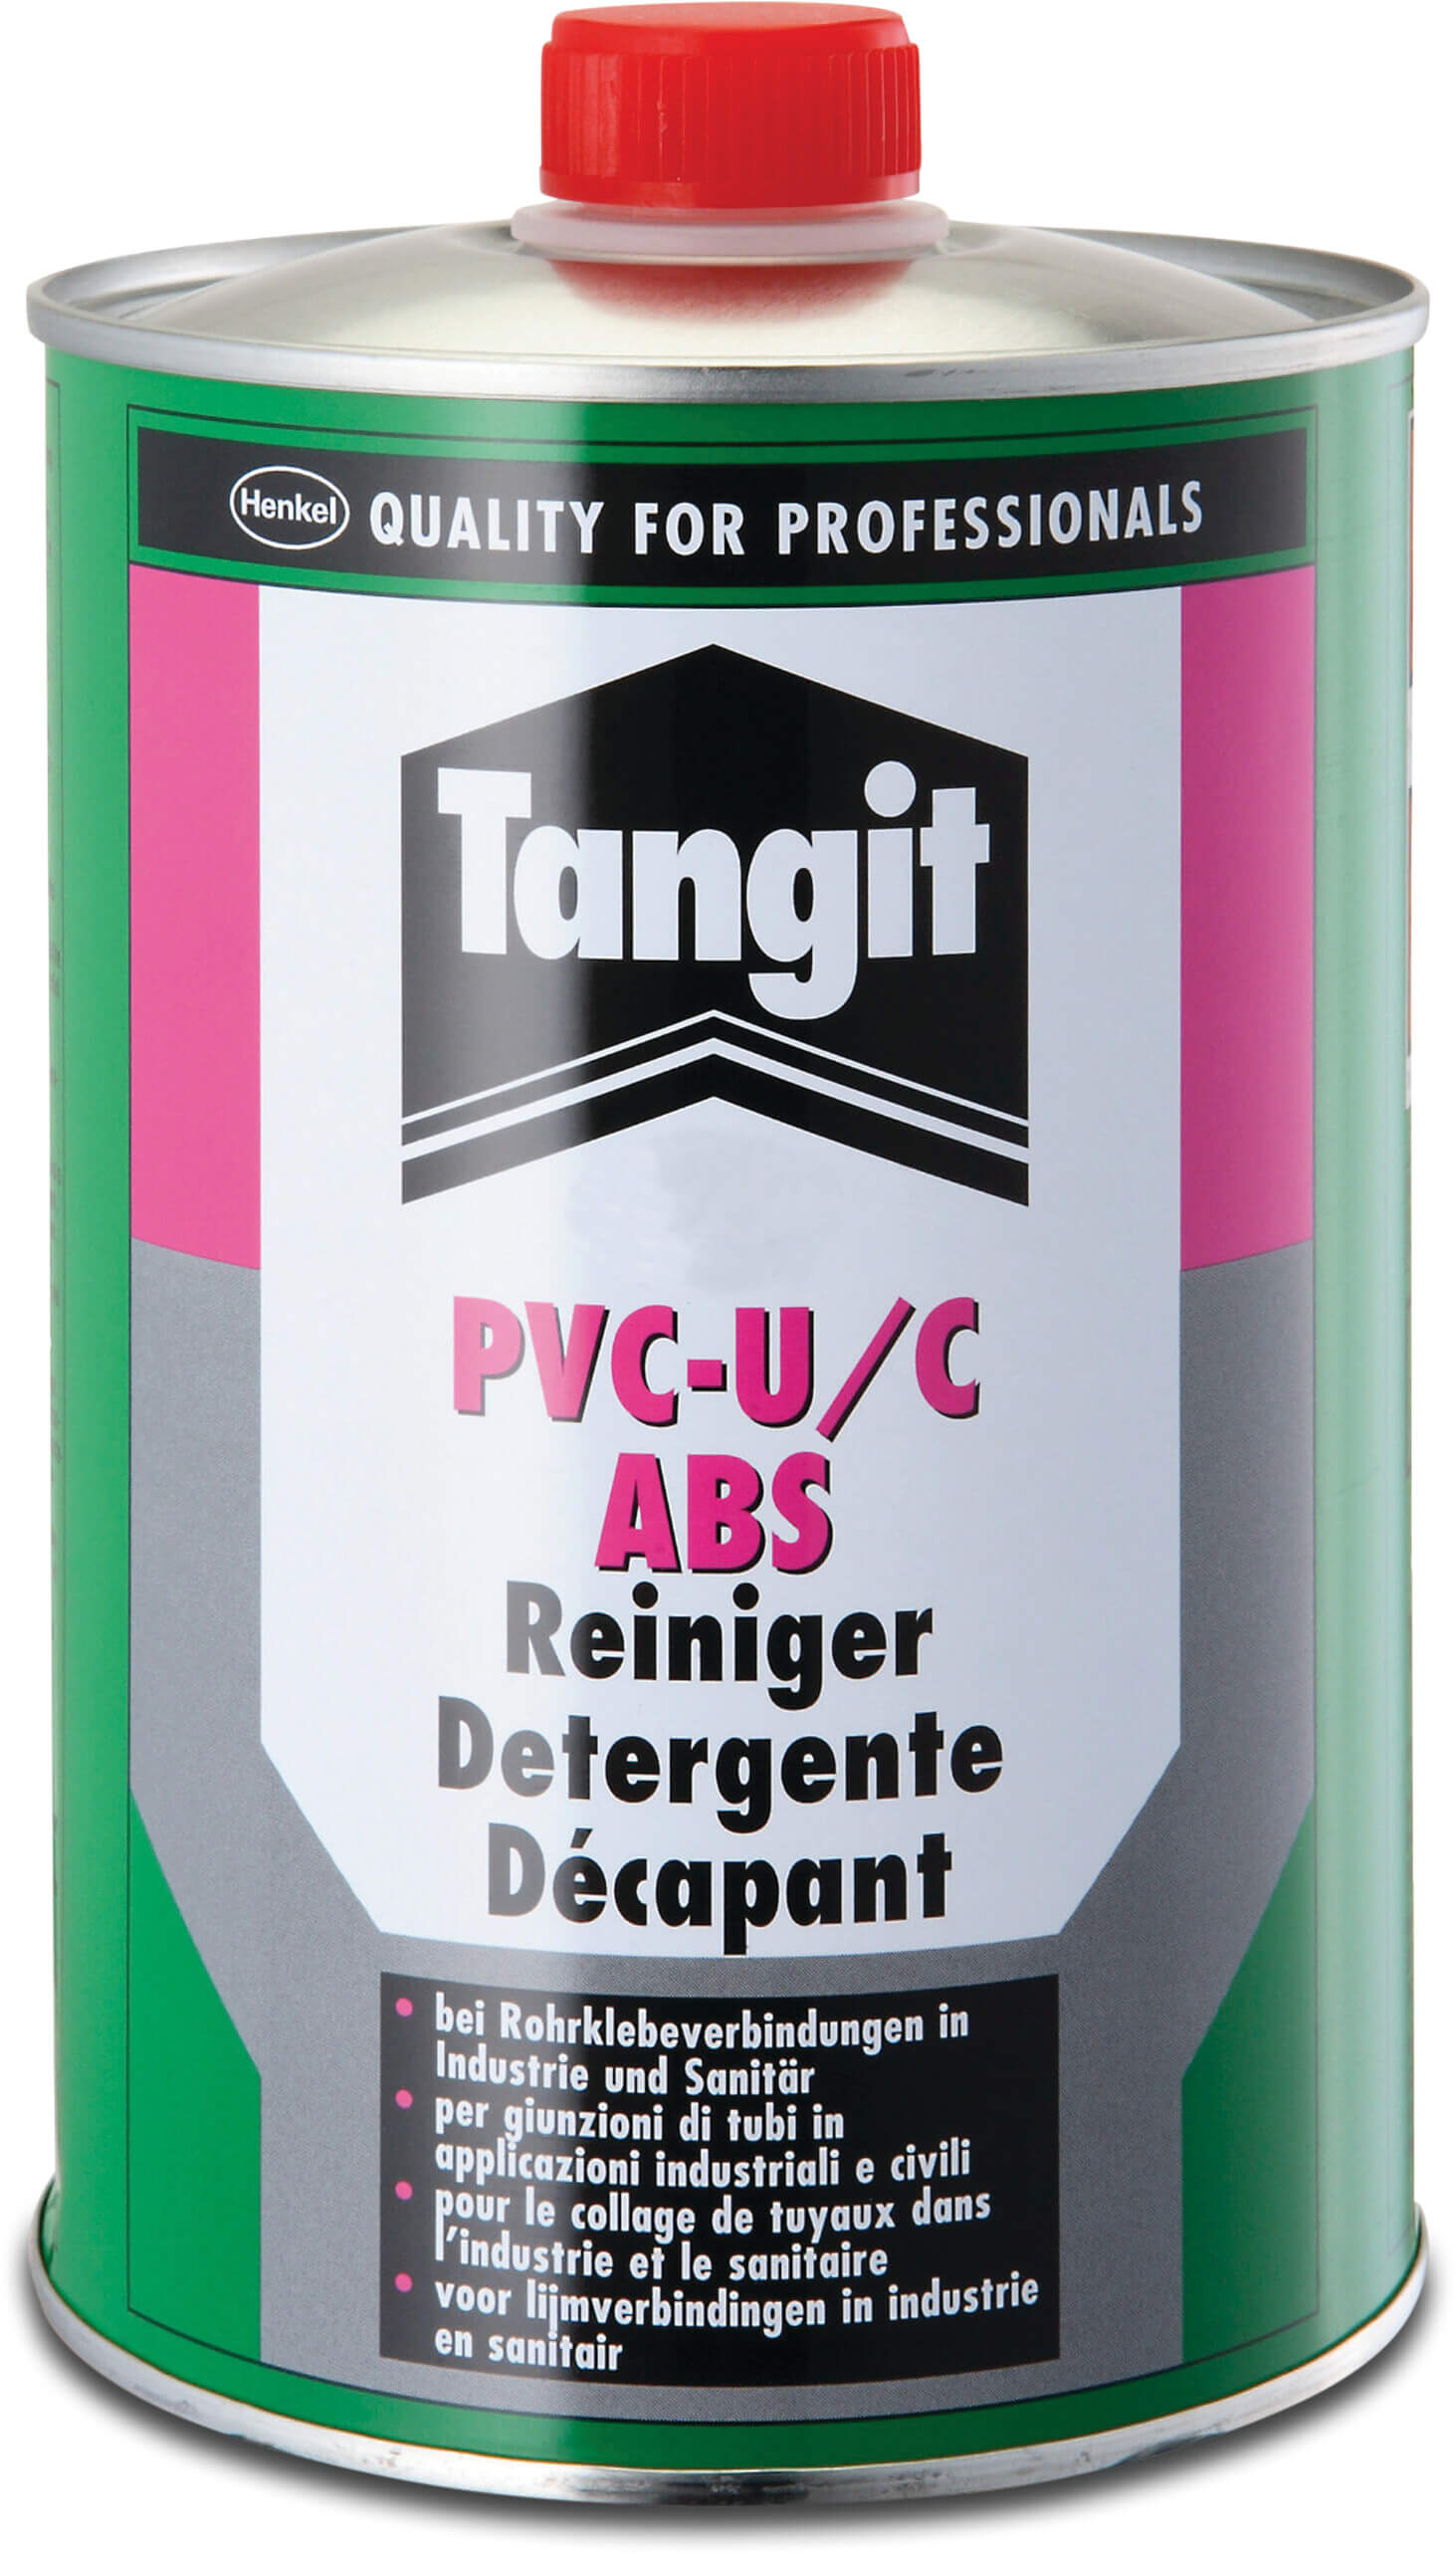 Tangit Solvent cleaner 1ltr type PVC-U/C ABS label EN/DE/NL/FR/IT